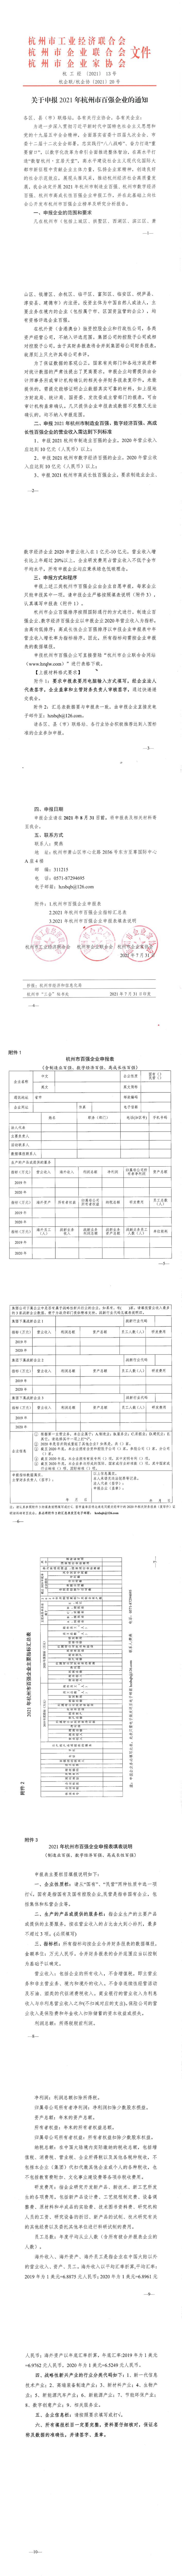 关于申报2021年杭州市百强企业的通知_1_10.png